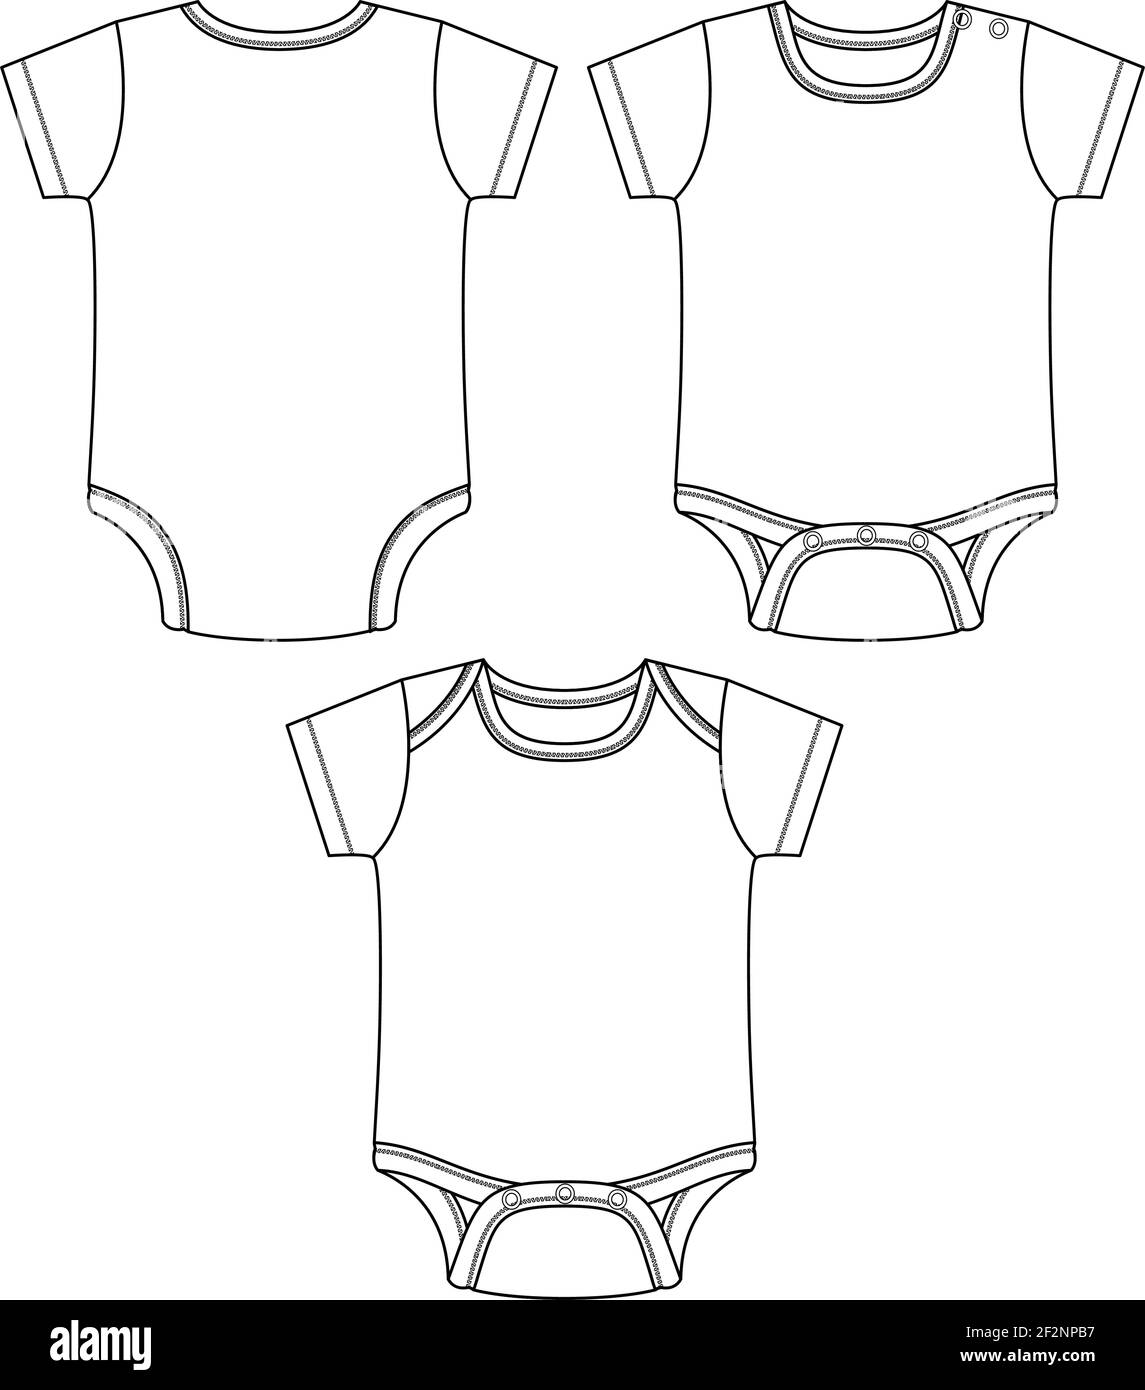 Vektor Baby Body. Layette Bekleidung Für Kleinkinder. Mode flache Skizze Vorlage. Technische Mode Illustration. Stock Vektor